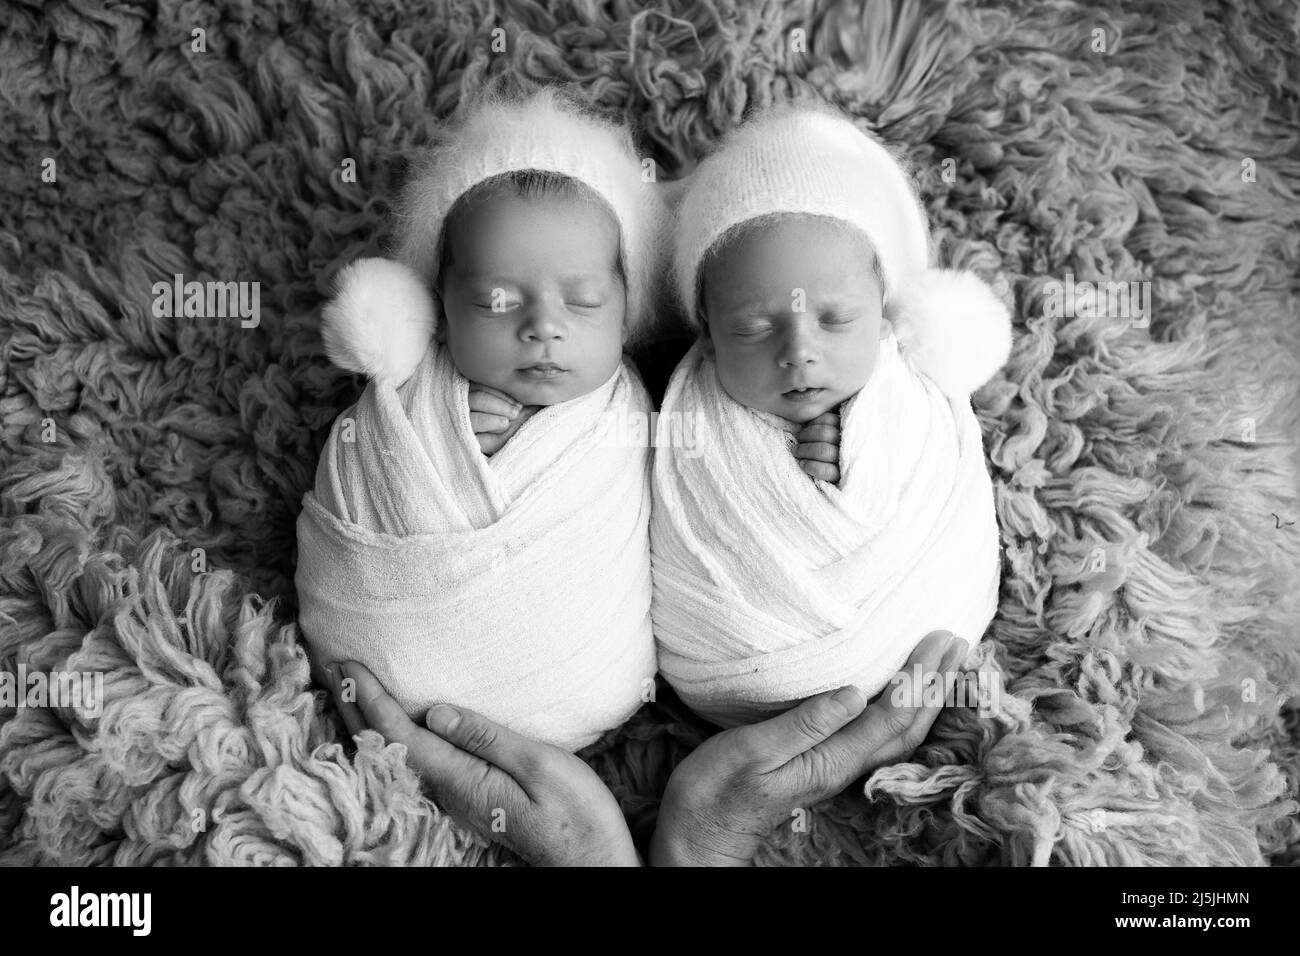 Twin boy piccoli in bozzetti bianchi su sfondo blu con tappi bianchi. Studio fotografico professionale di gemelli neonati. Foto Stock